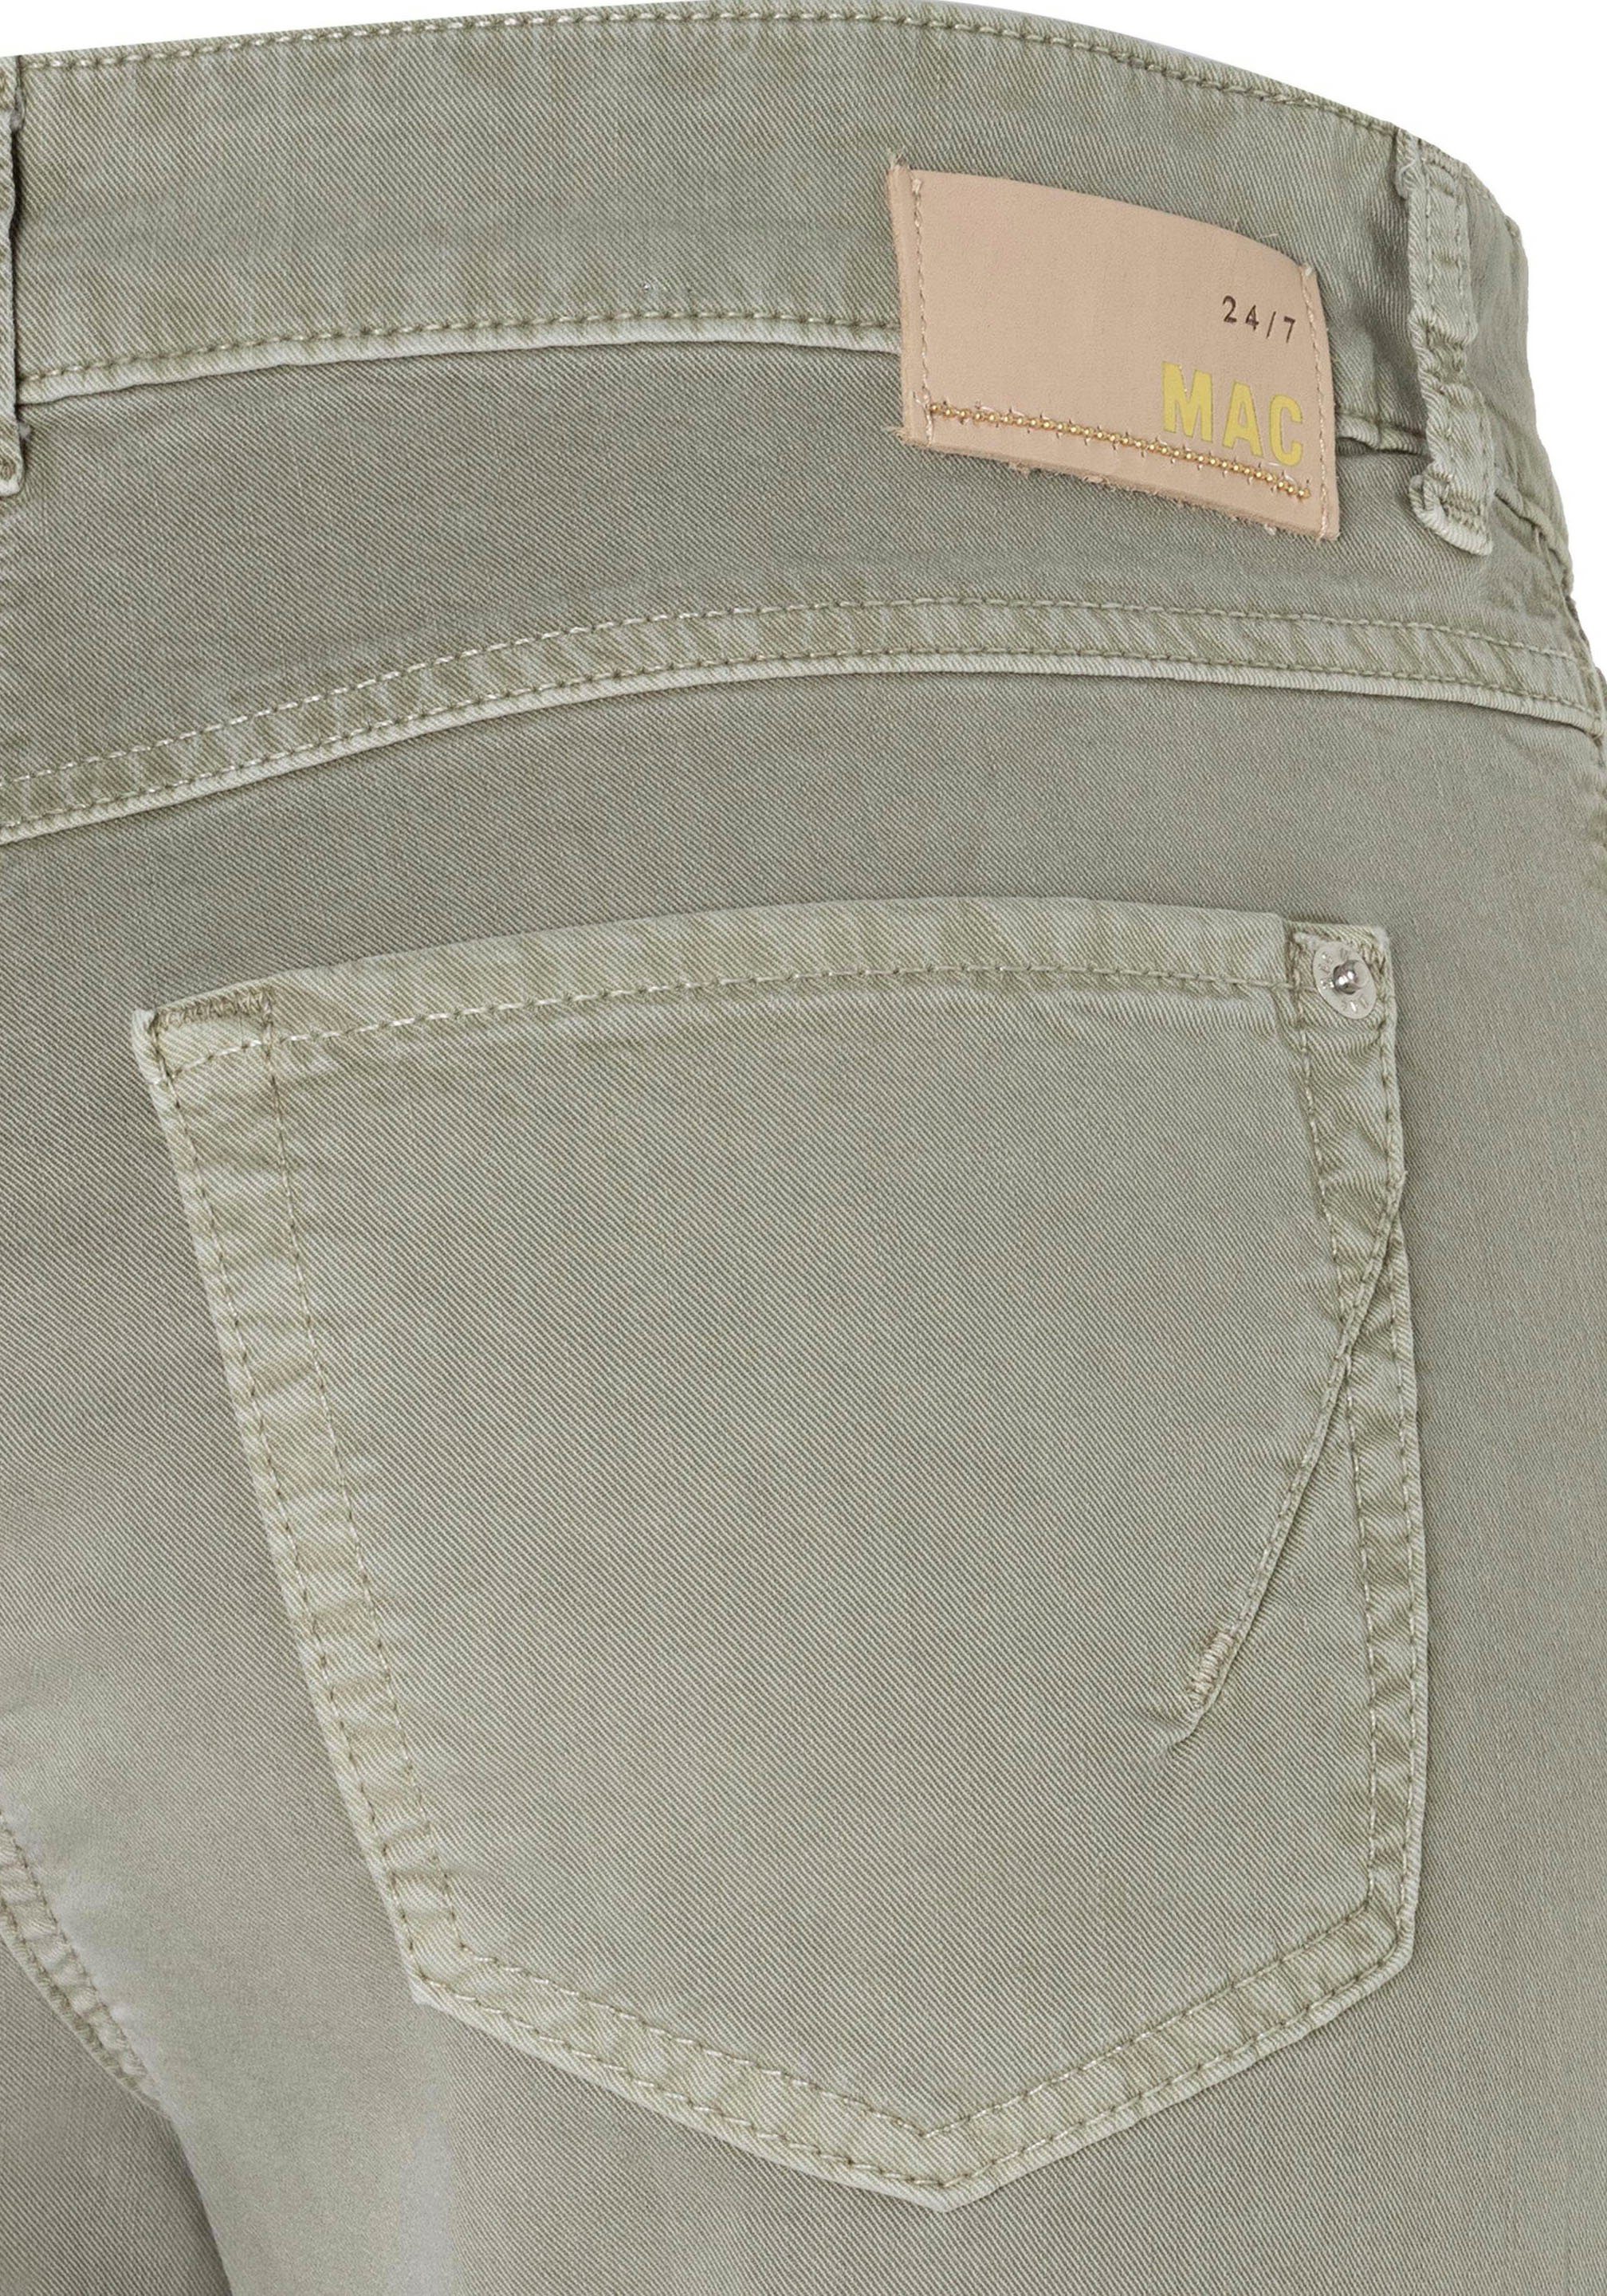 geschnitten Schmal Angela MAC Stretch-Jeans khaki light